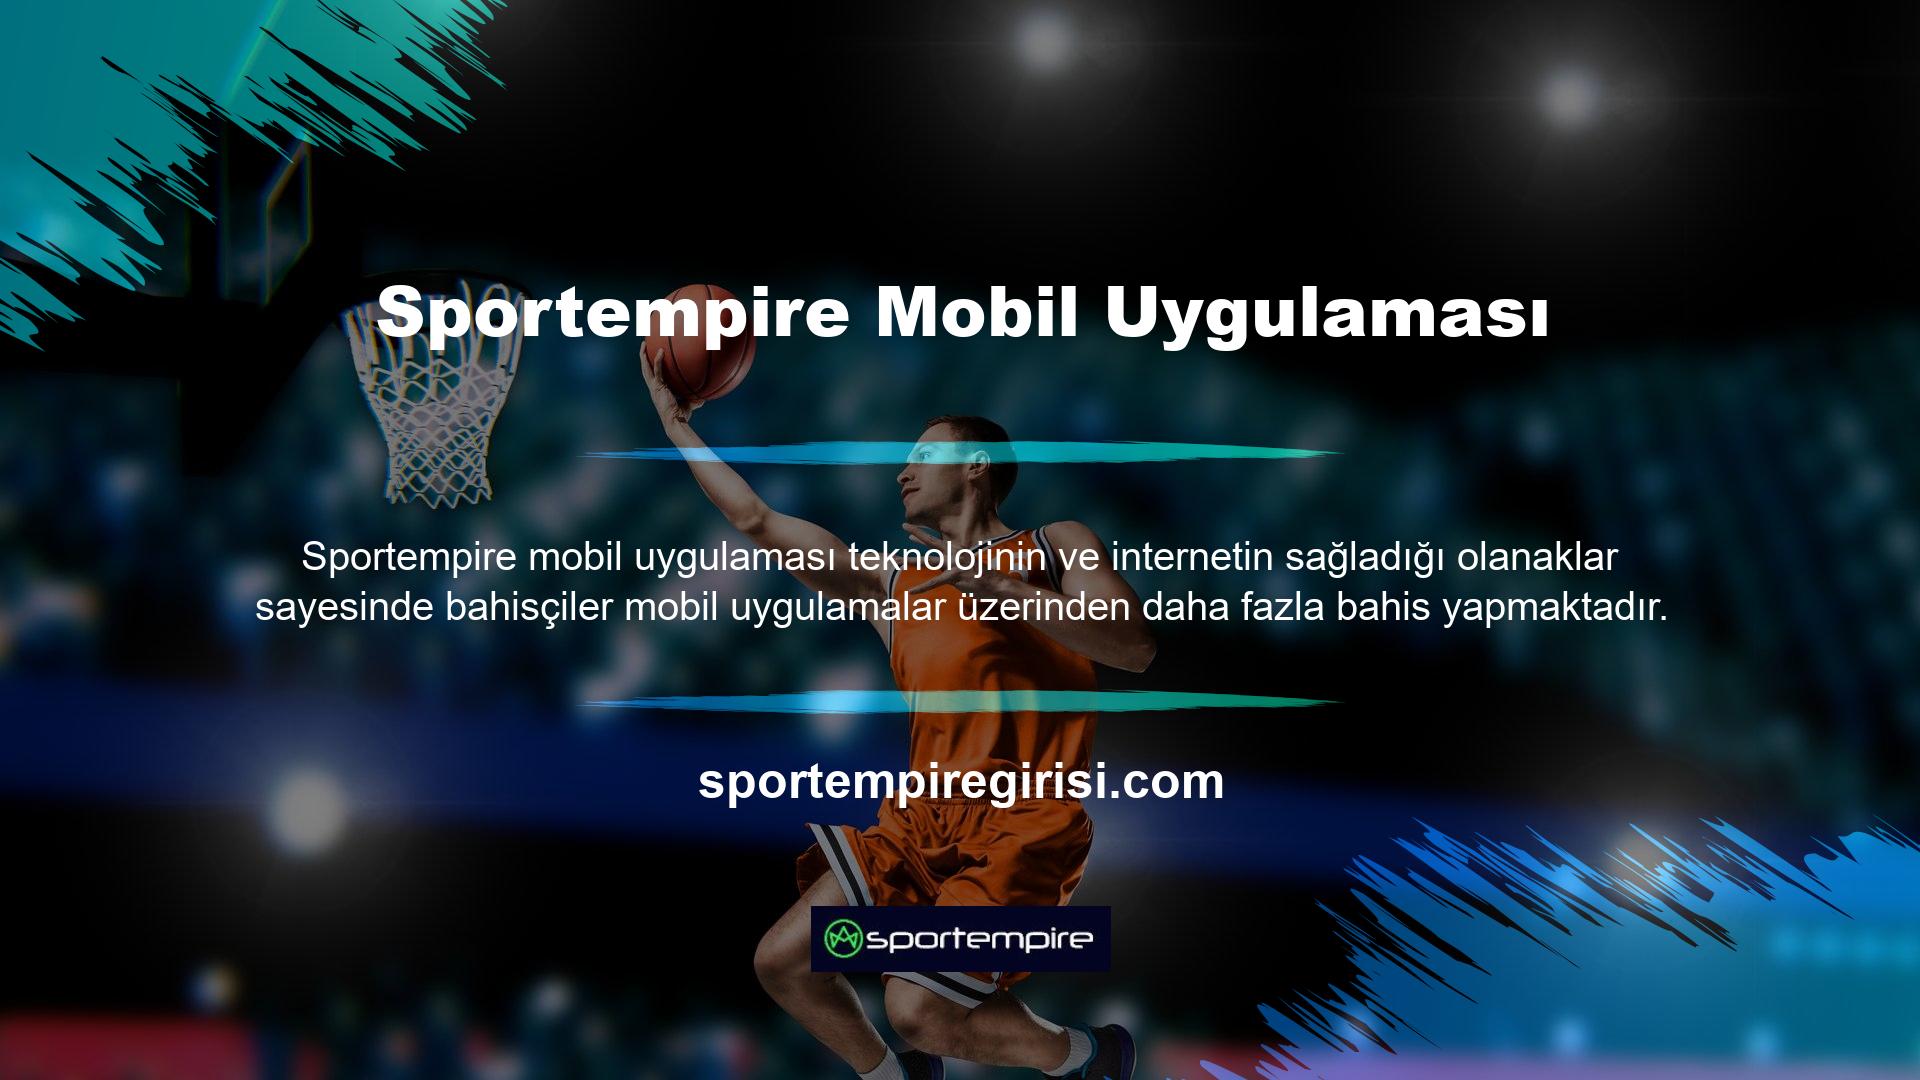 Sportempire mobil uygulamaları bunu biliyor ve mobil uygulamalarla ilgili kesintisiz destek sağlıyor